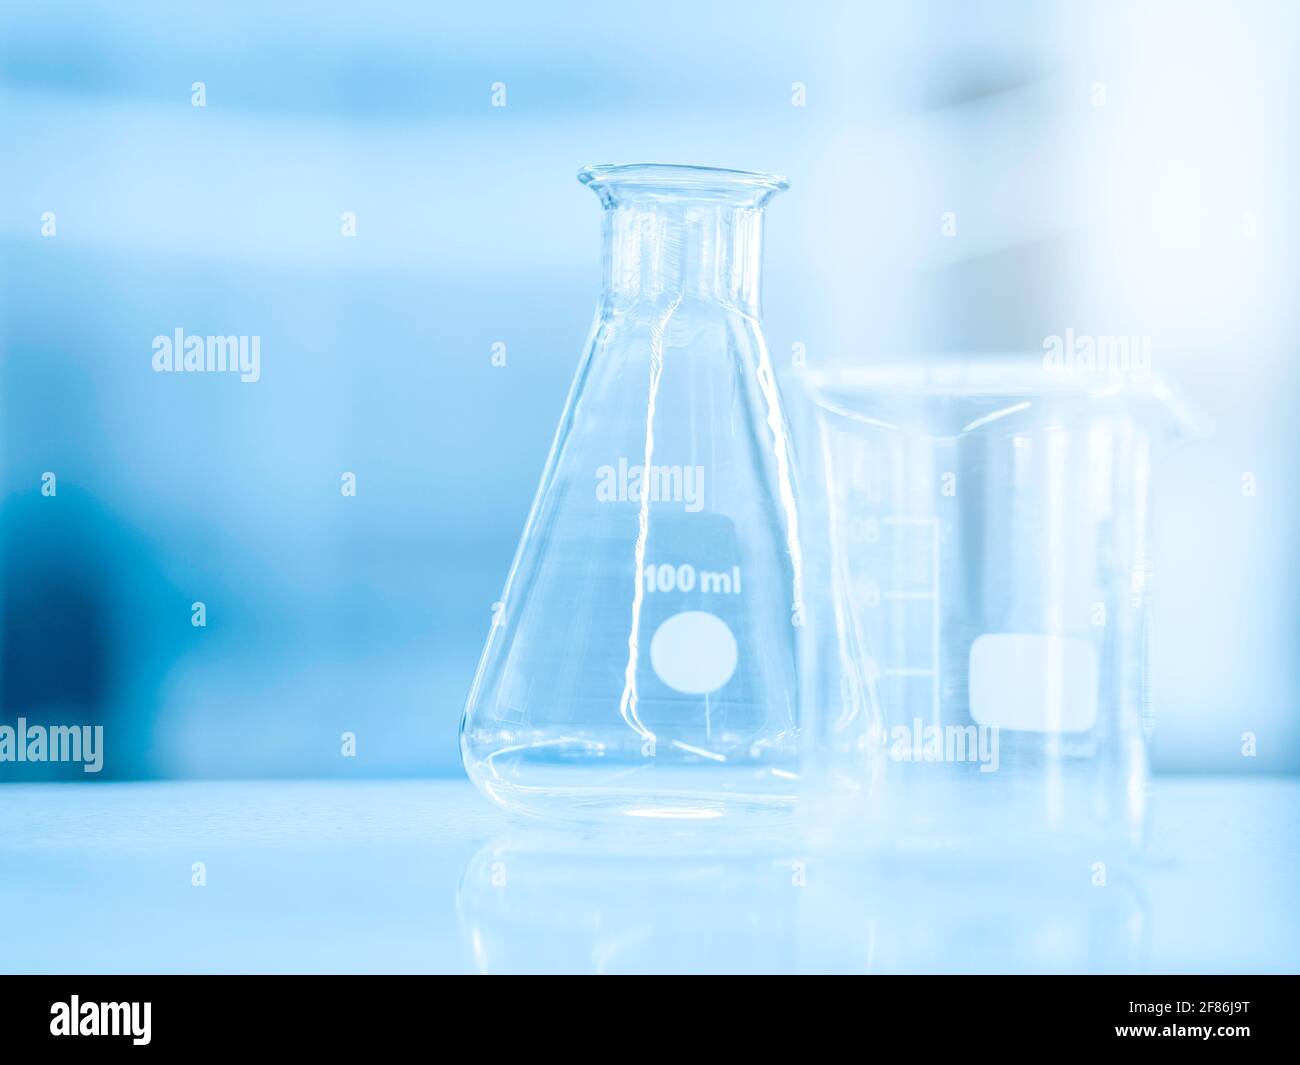 Flacon en verre vide de 100 ml et bécher de mesure en laboratoire de chimie bleue pour une expérience scientifique avec un espace de copie. Équis. Scientifique Banque D'Images